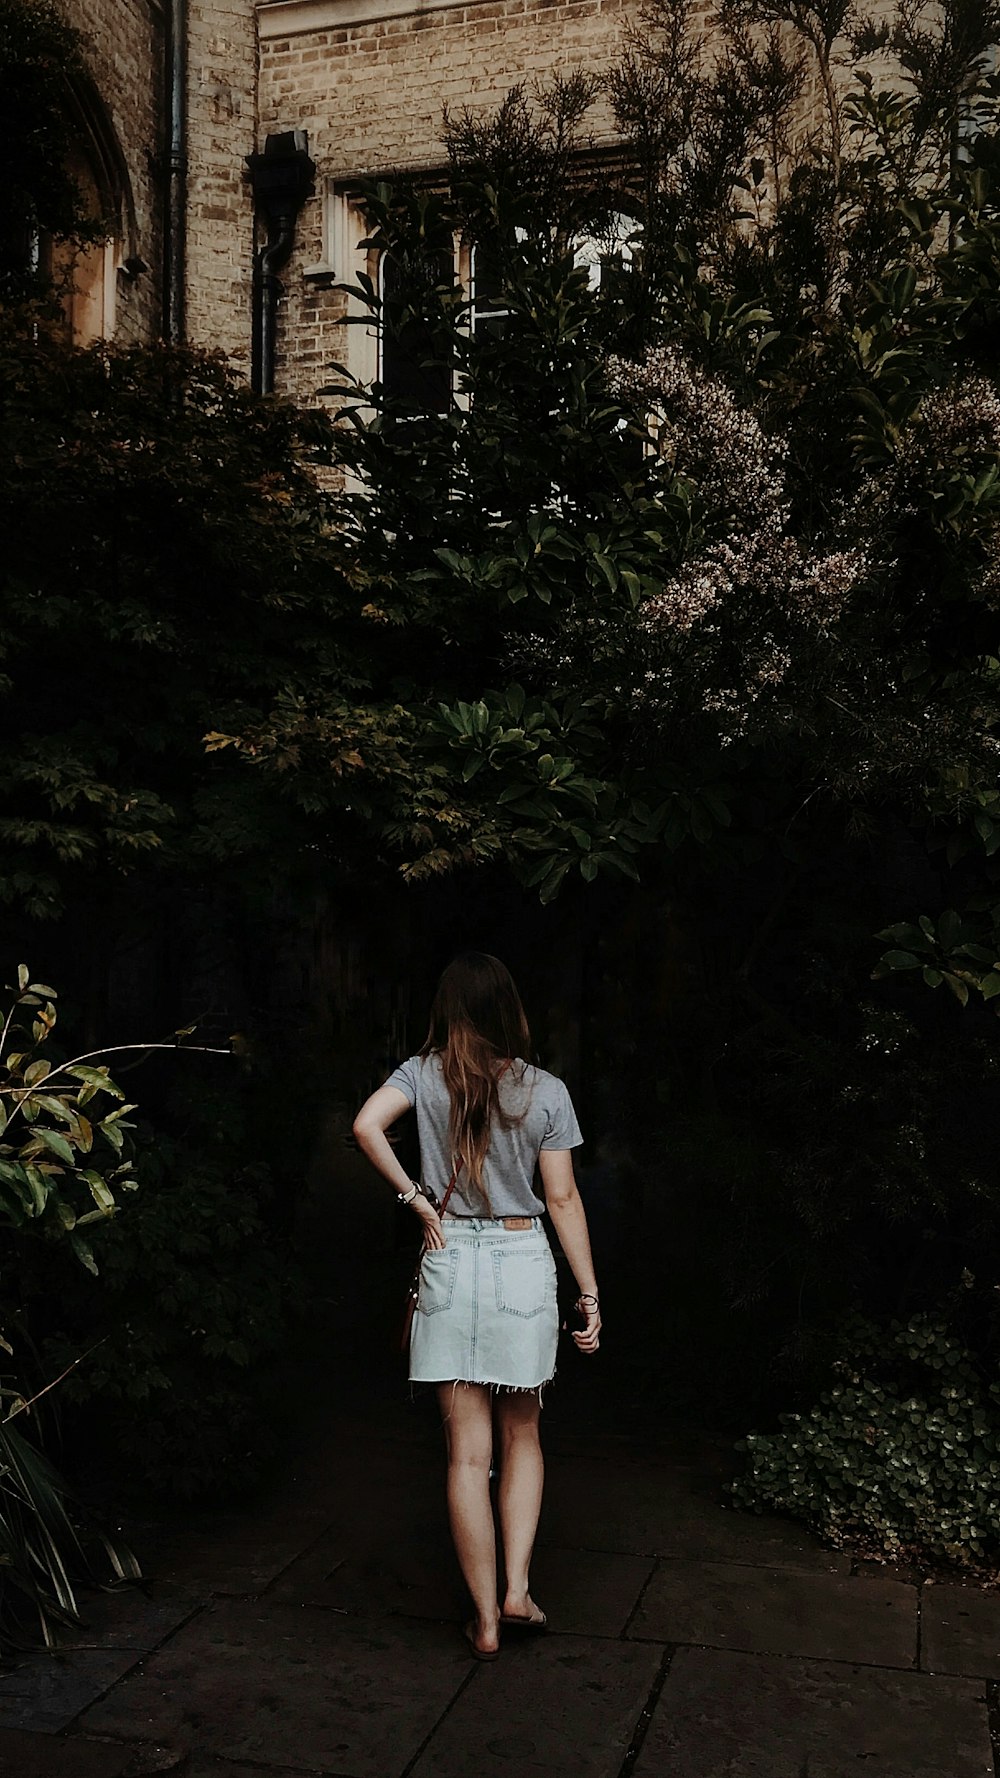 woman walking in flower garden